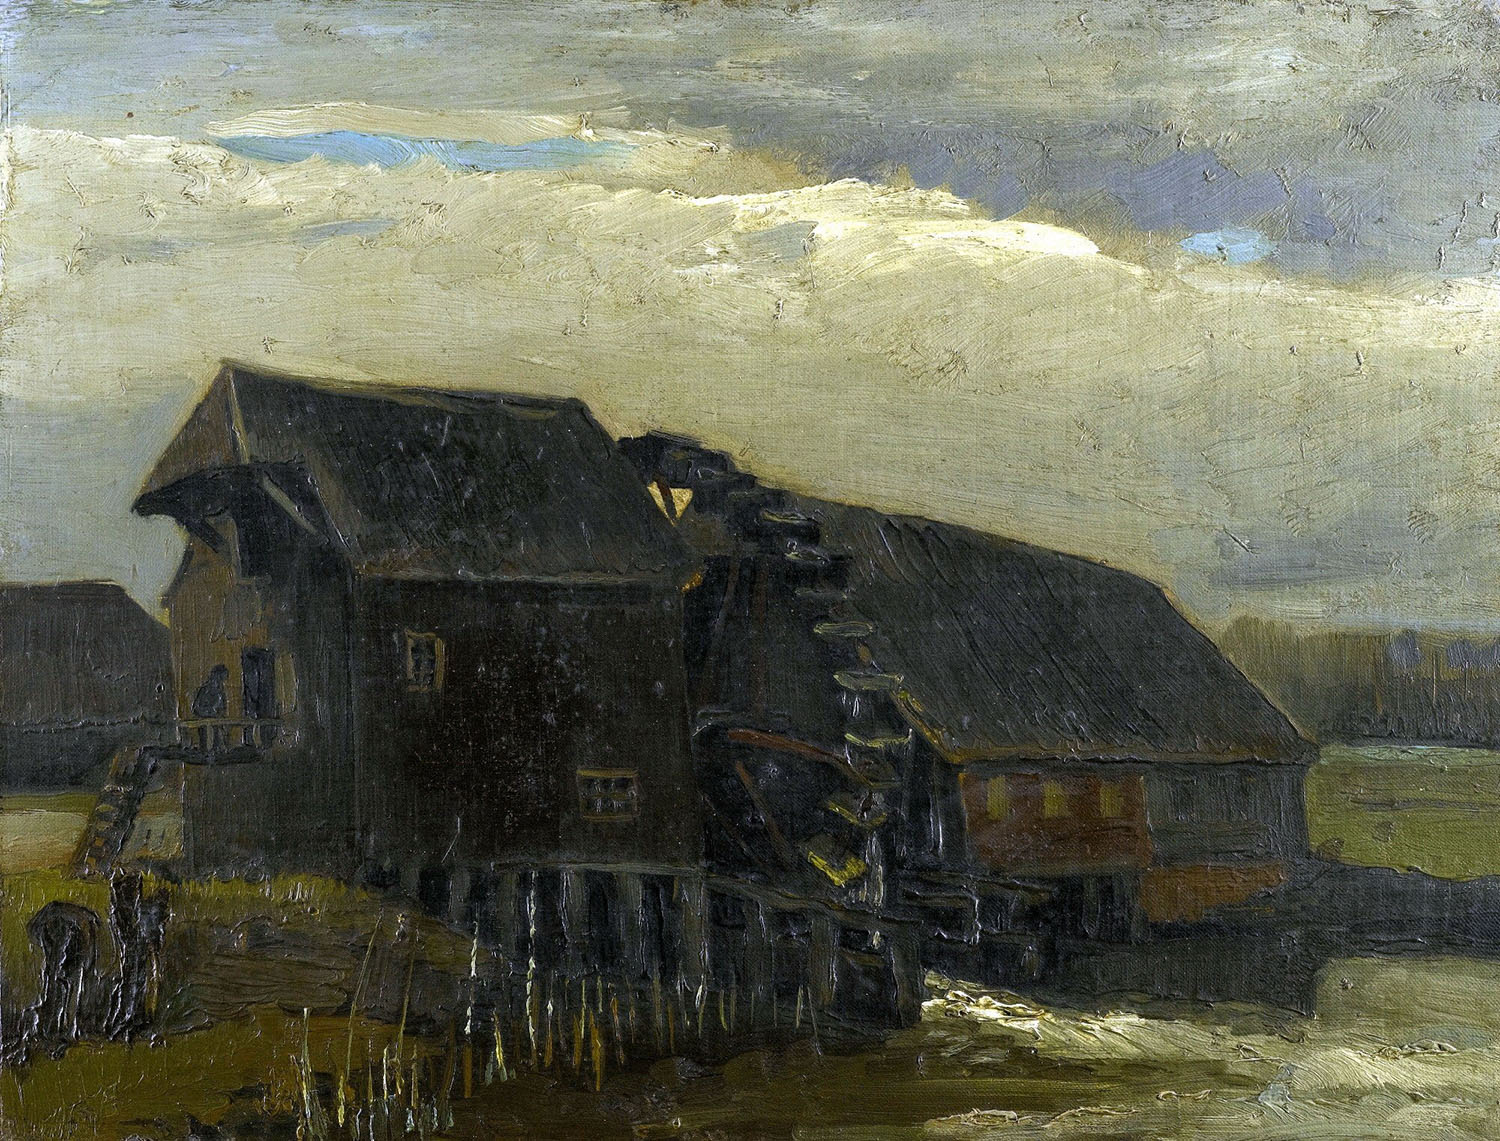 Винсент Ван Гог. "Водяная мельница в Опветтене". 1884.